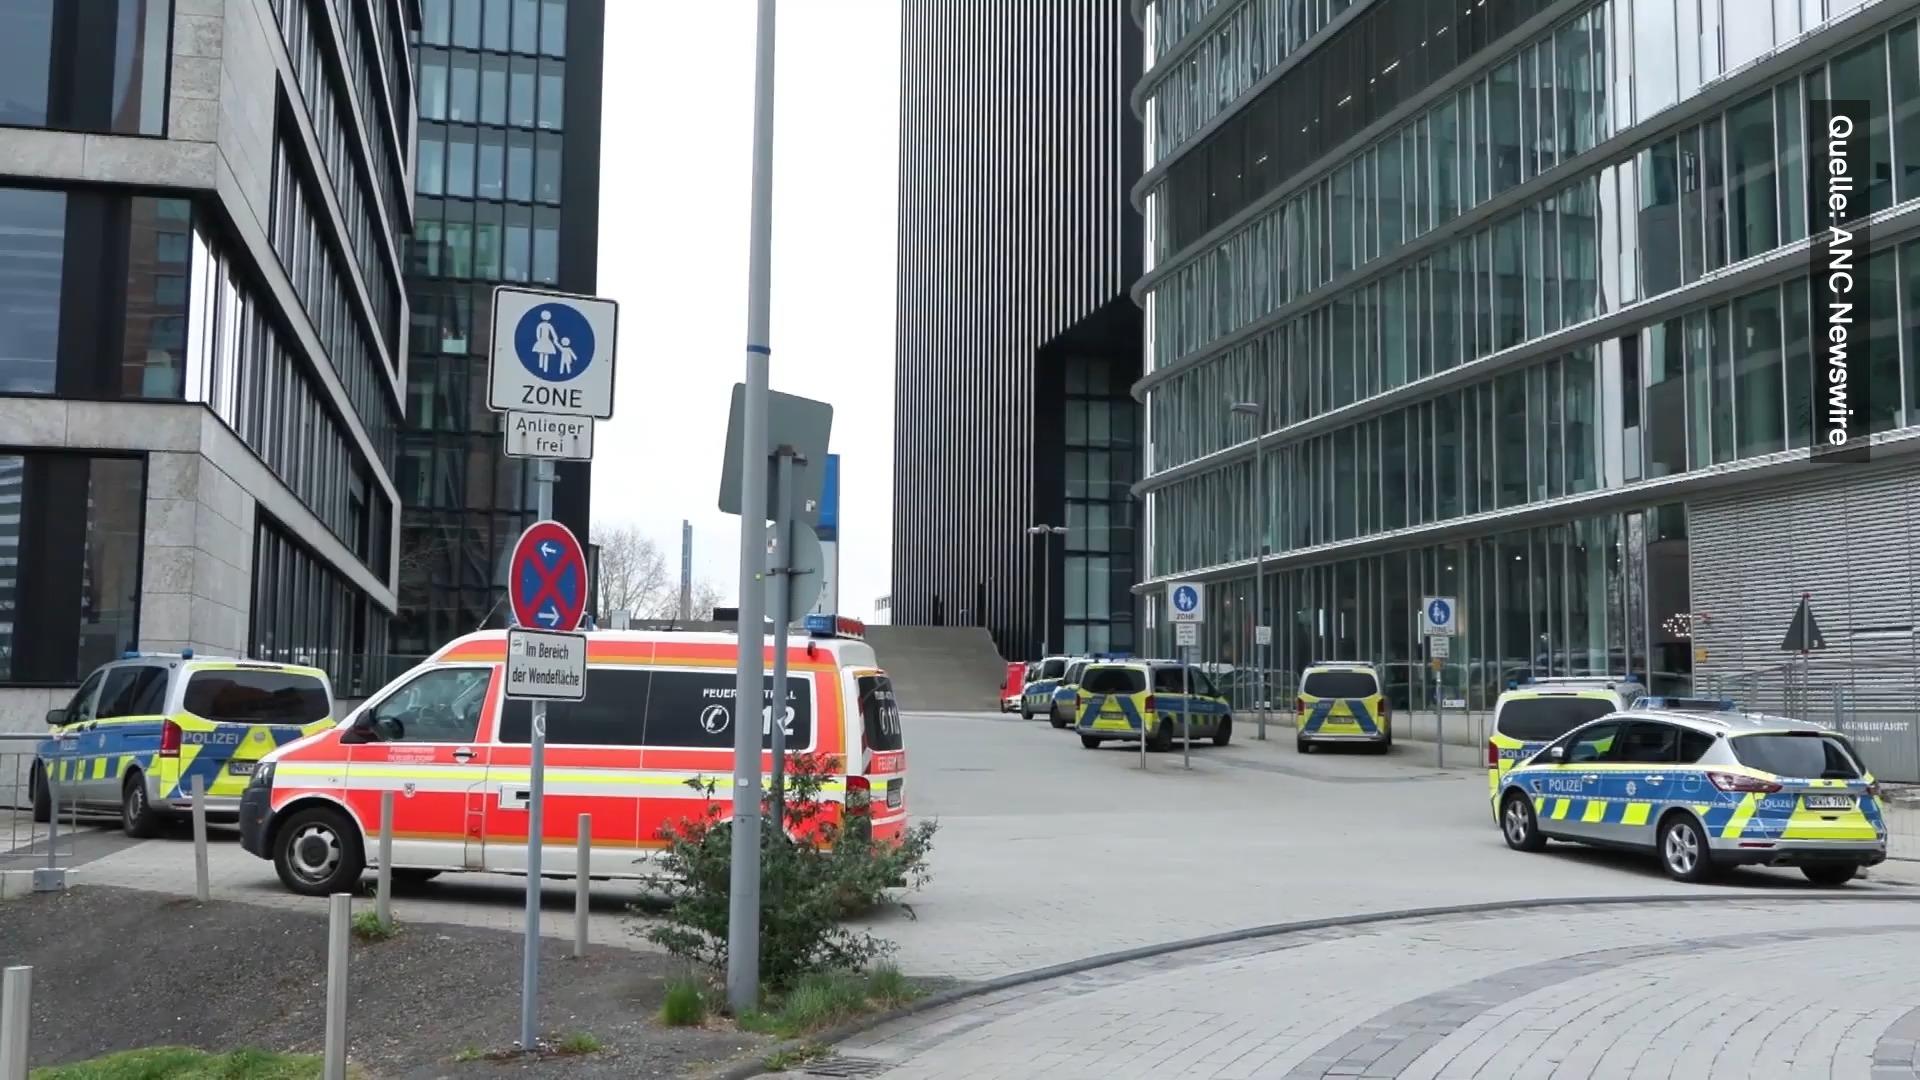 Dwie rodziny rzucają w siebie meblami – lobby zniszczone Dusseldorf: Gwałtowna bójka w luksusowym hotelu